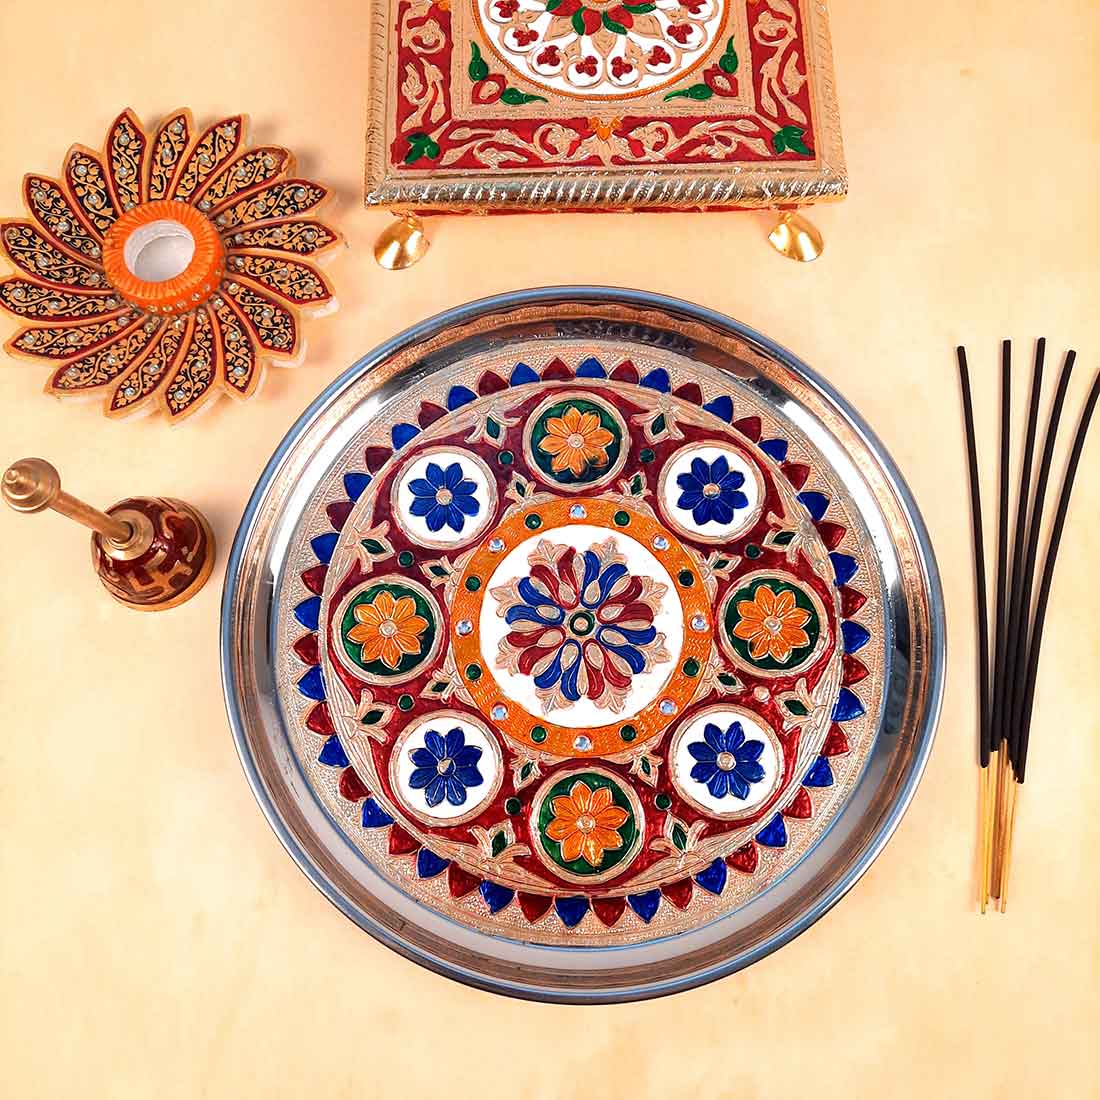 Decorative Plate | Puja Thali -Flower Design - For Pooja, Karwachauth & Festivals - 11 Inch - ApkaMart